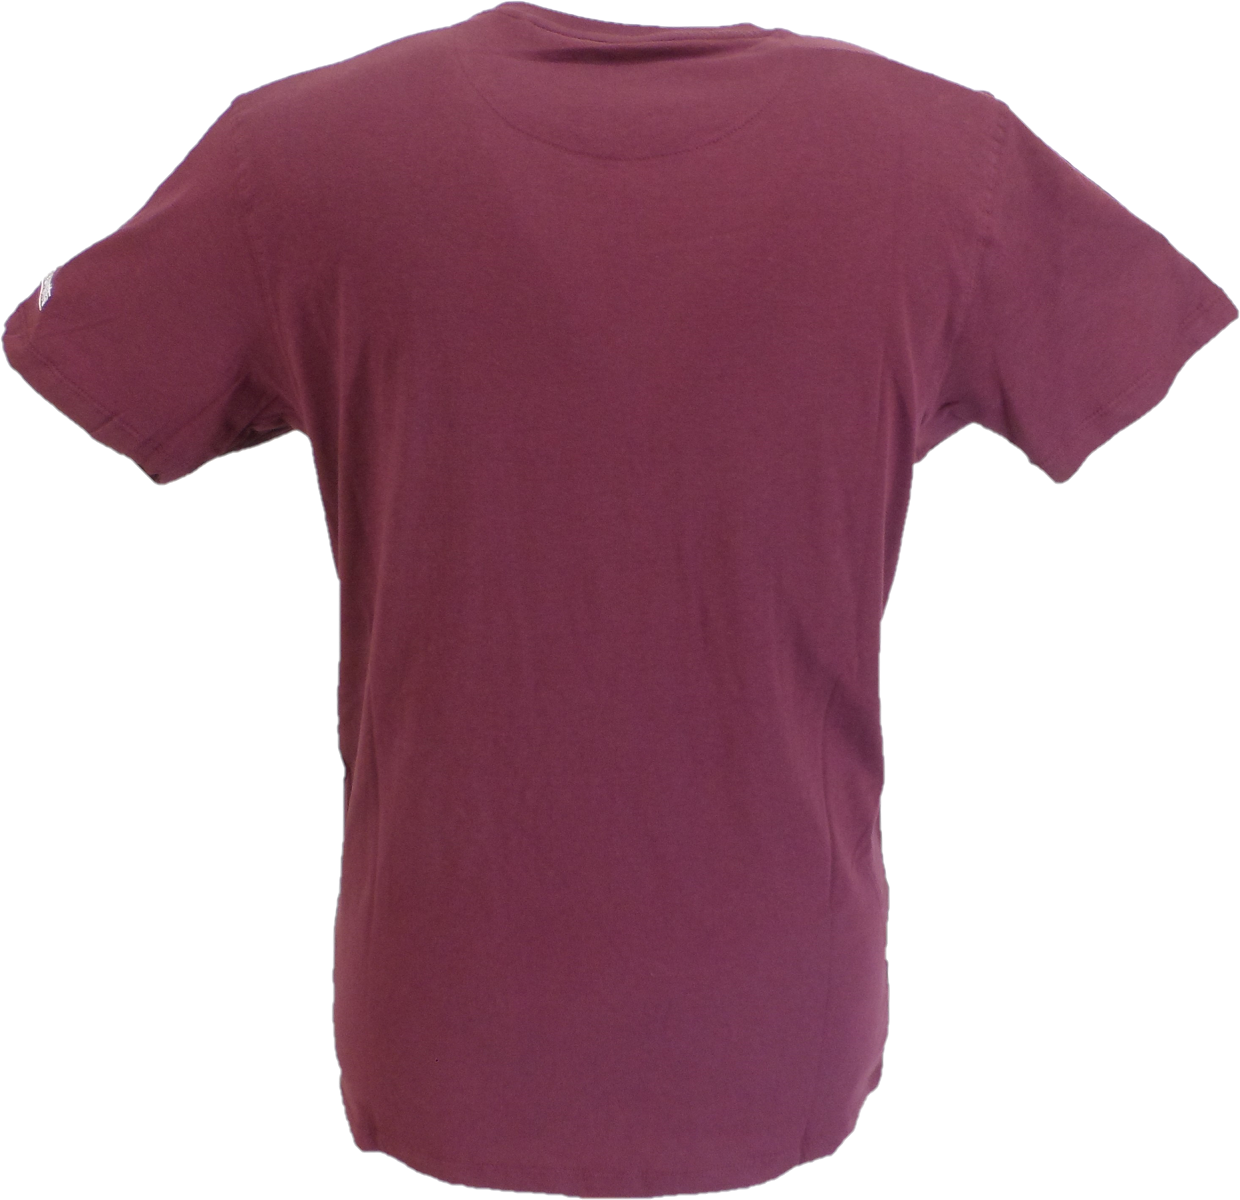 T-shirt rétro avec icône de boîte violette de raisin pour hommes Lambretta